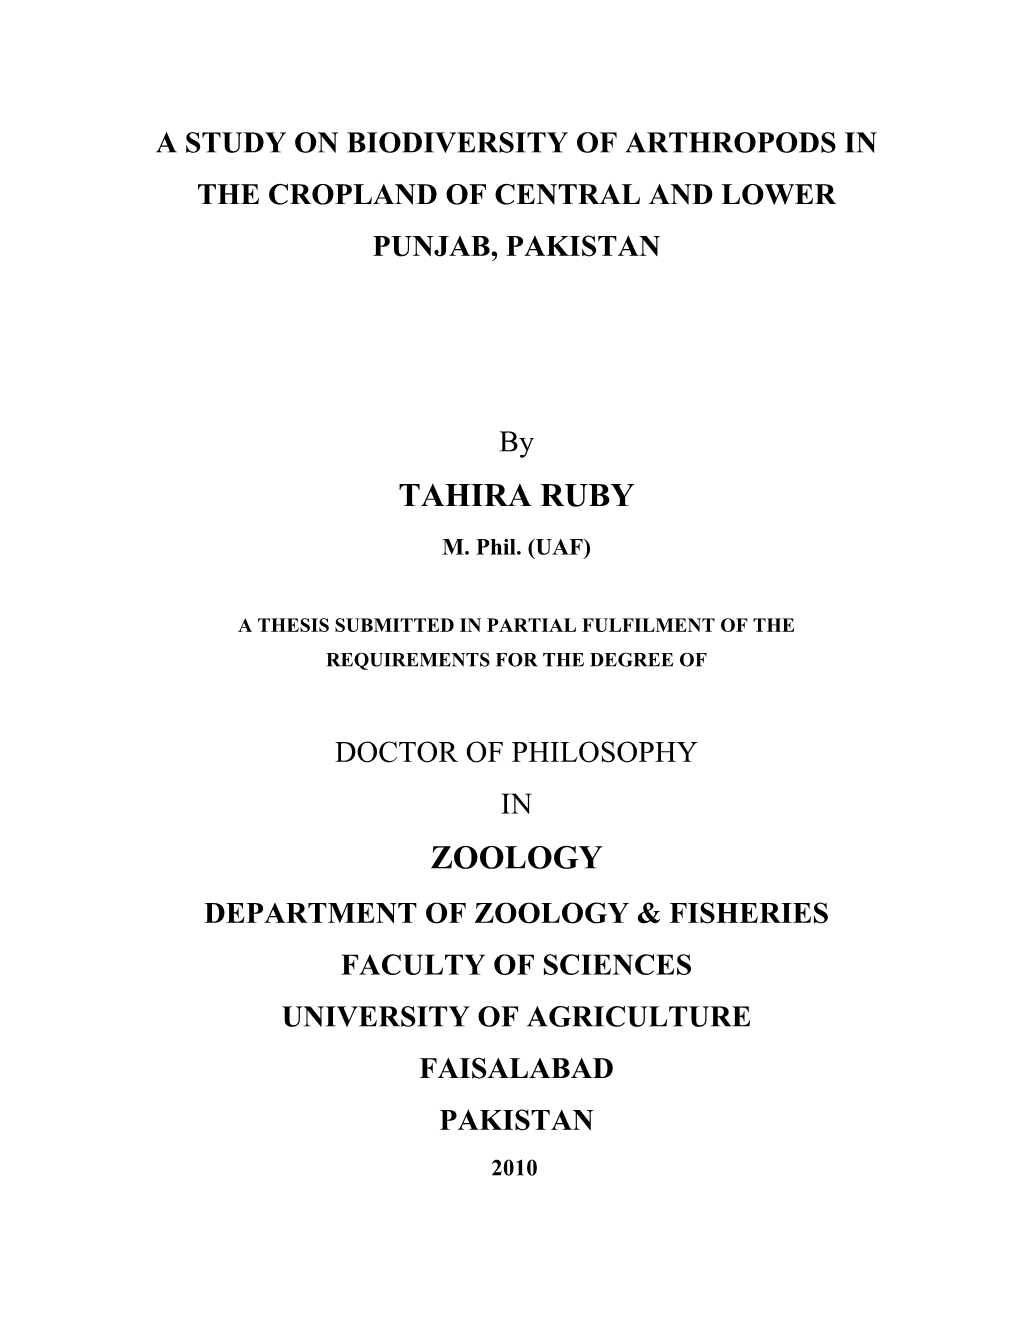 Tahira Ruby Zoology